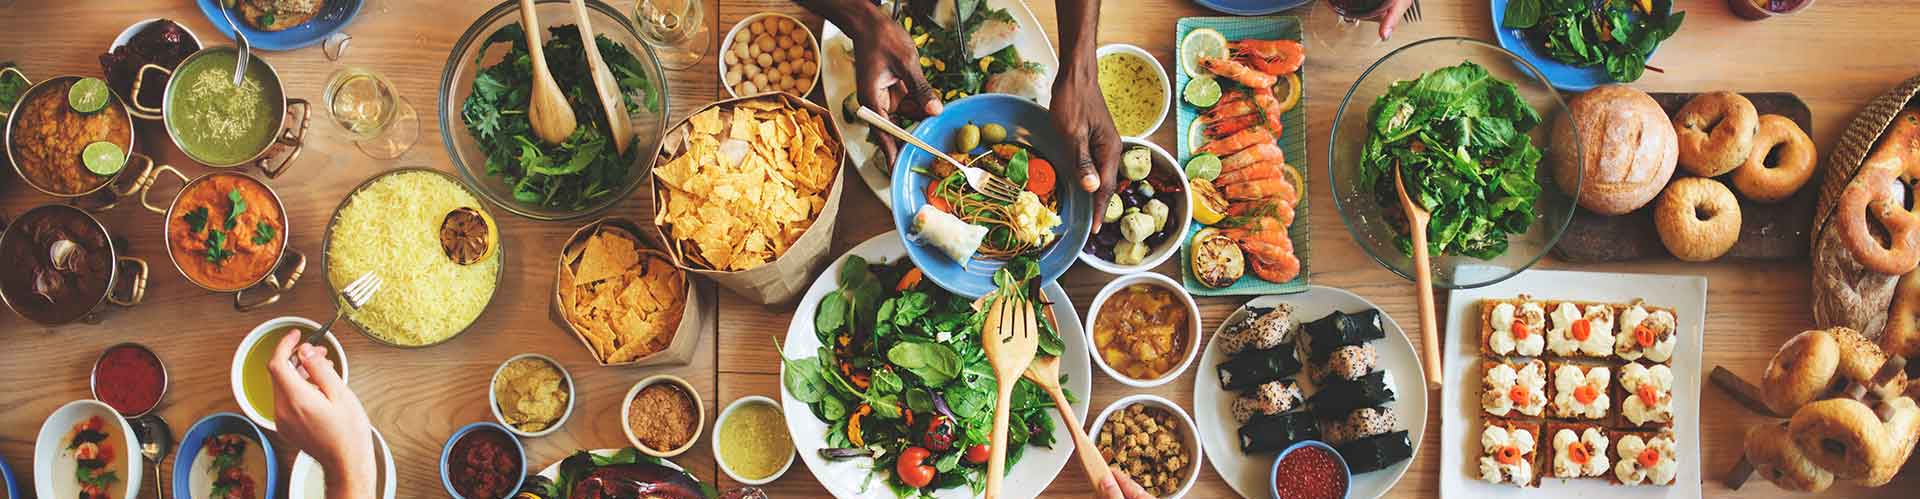  Du curry, du riz, des fruits de mer, des salades et des pains de différentes cultures sont disposés sur une grande table.